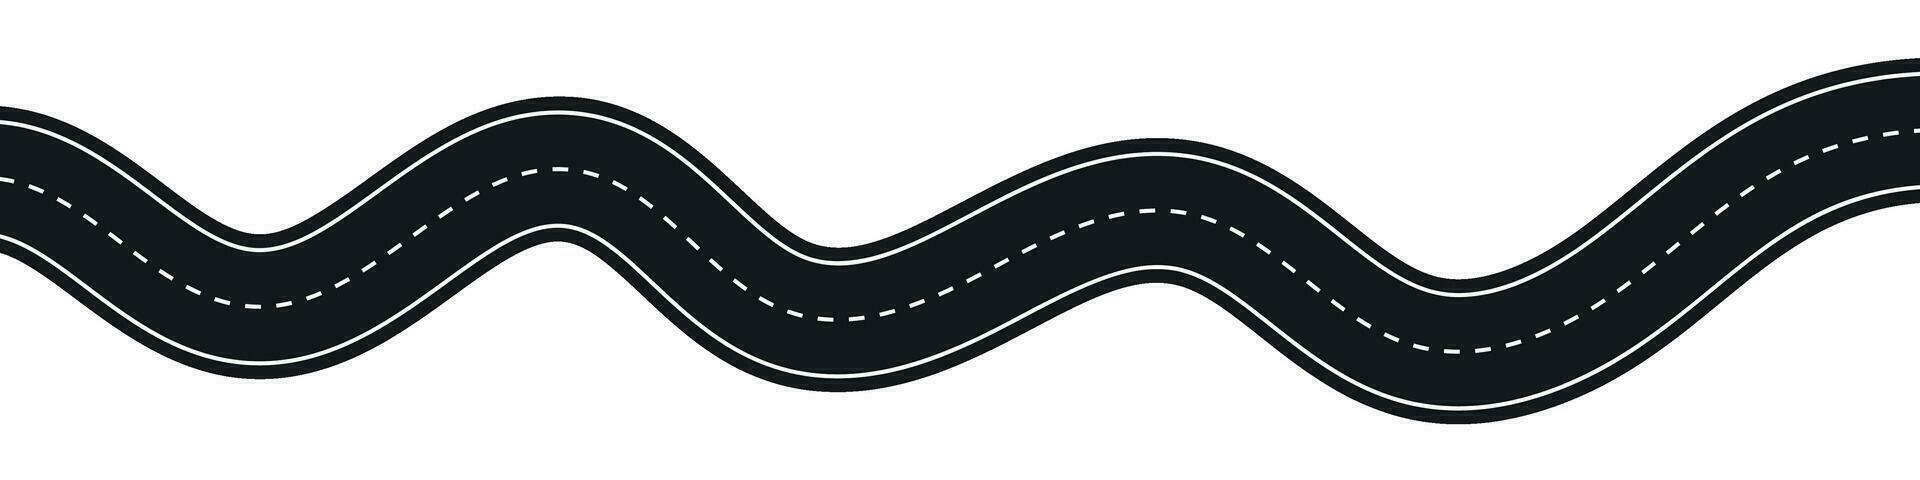 lindning motorväg väg från topp se. platt vektor illustration isolerat på vit bakgrund.